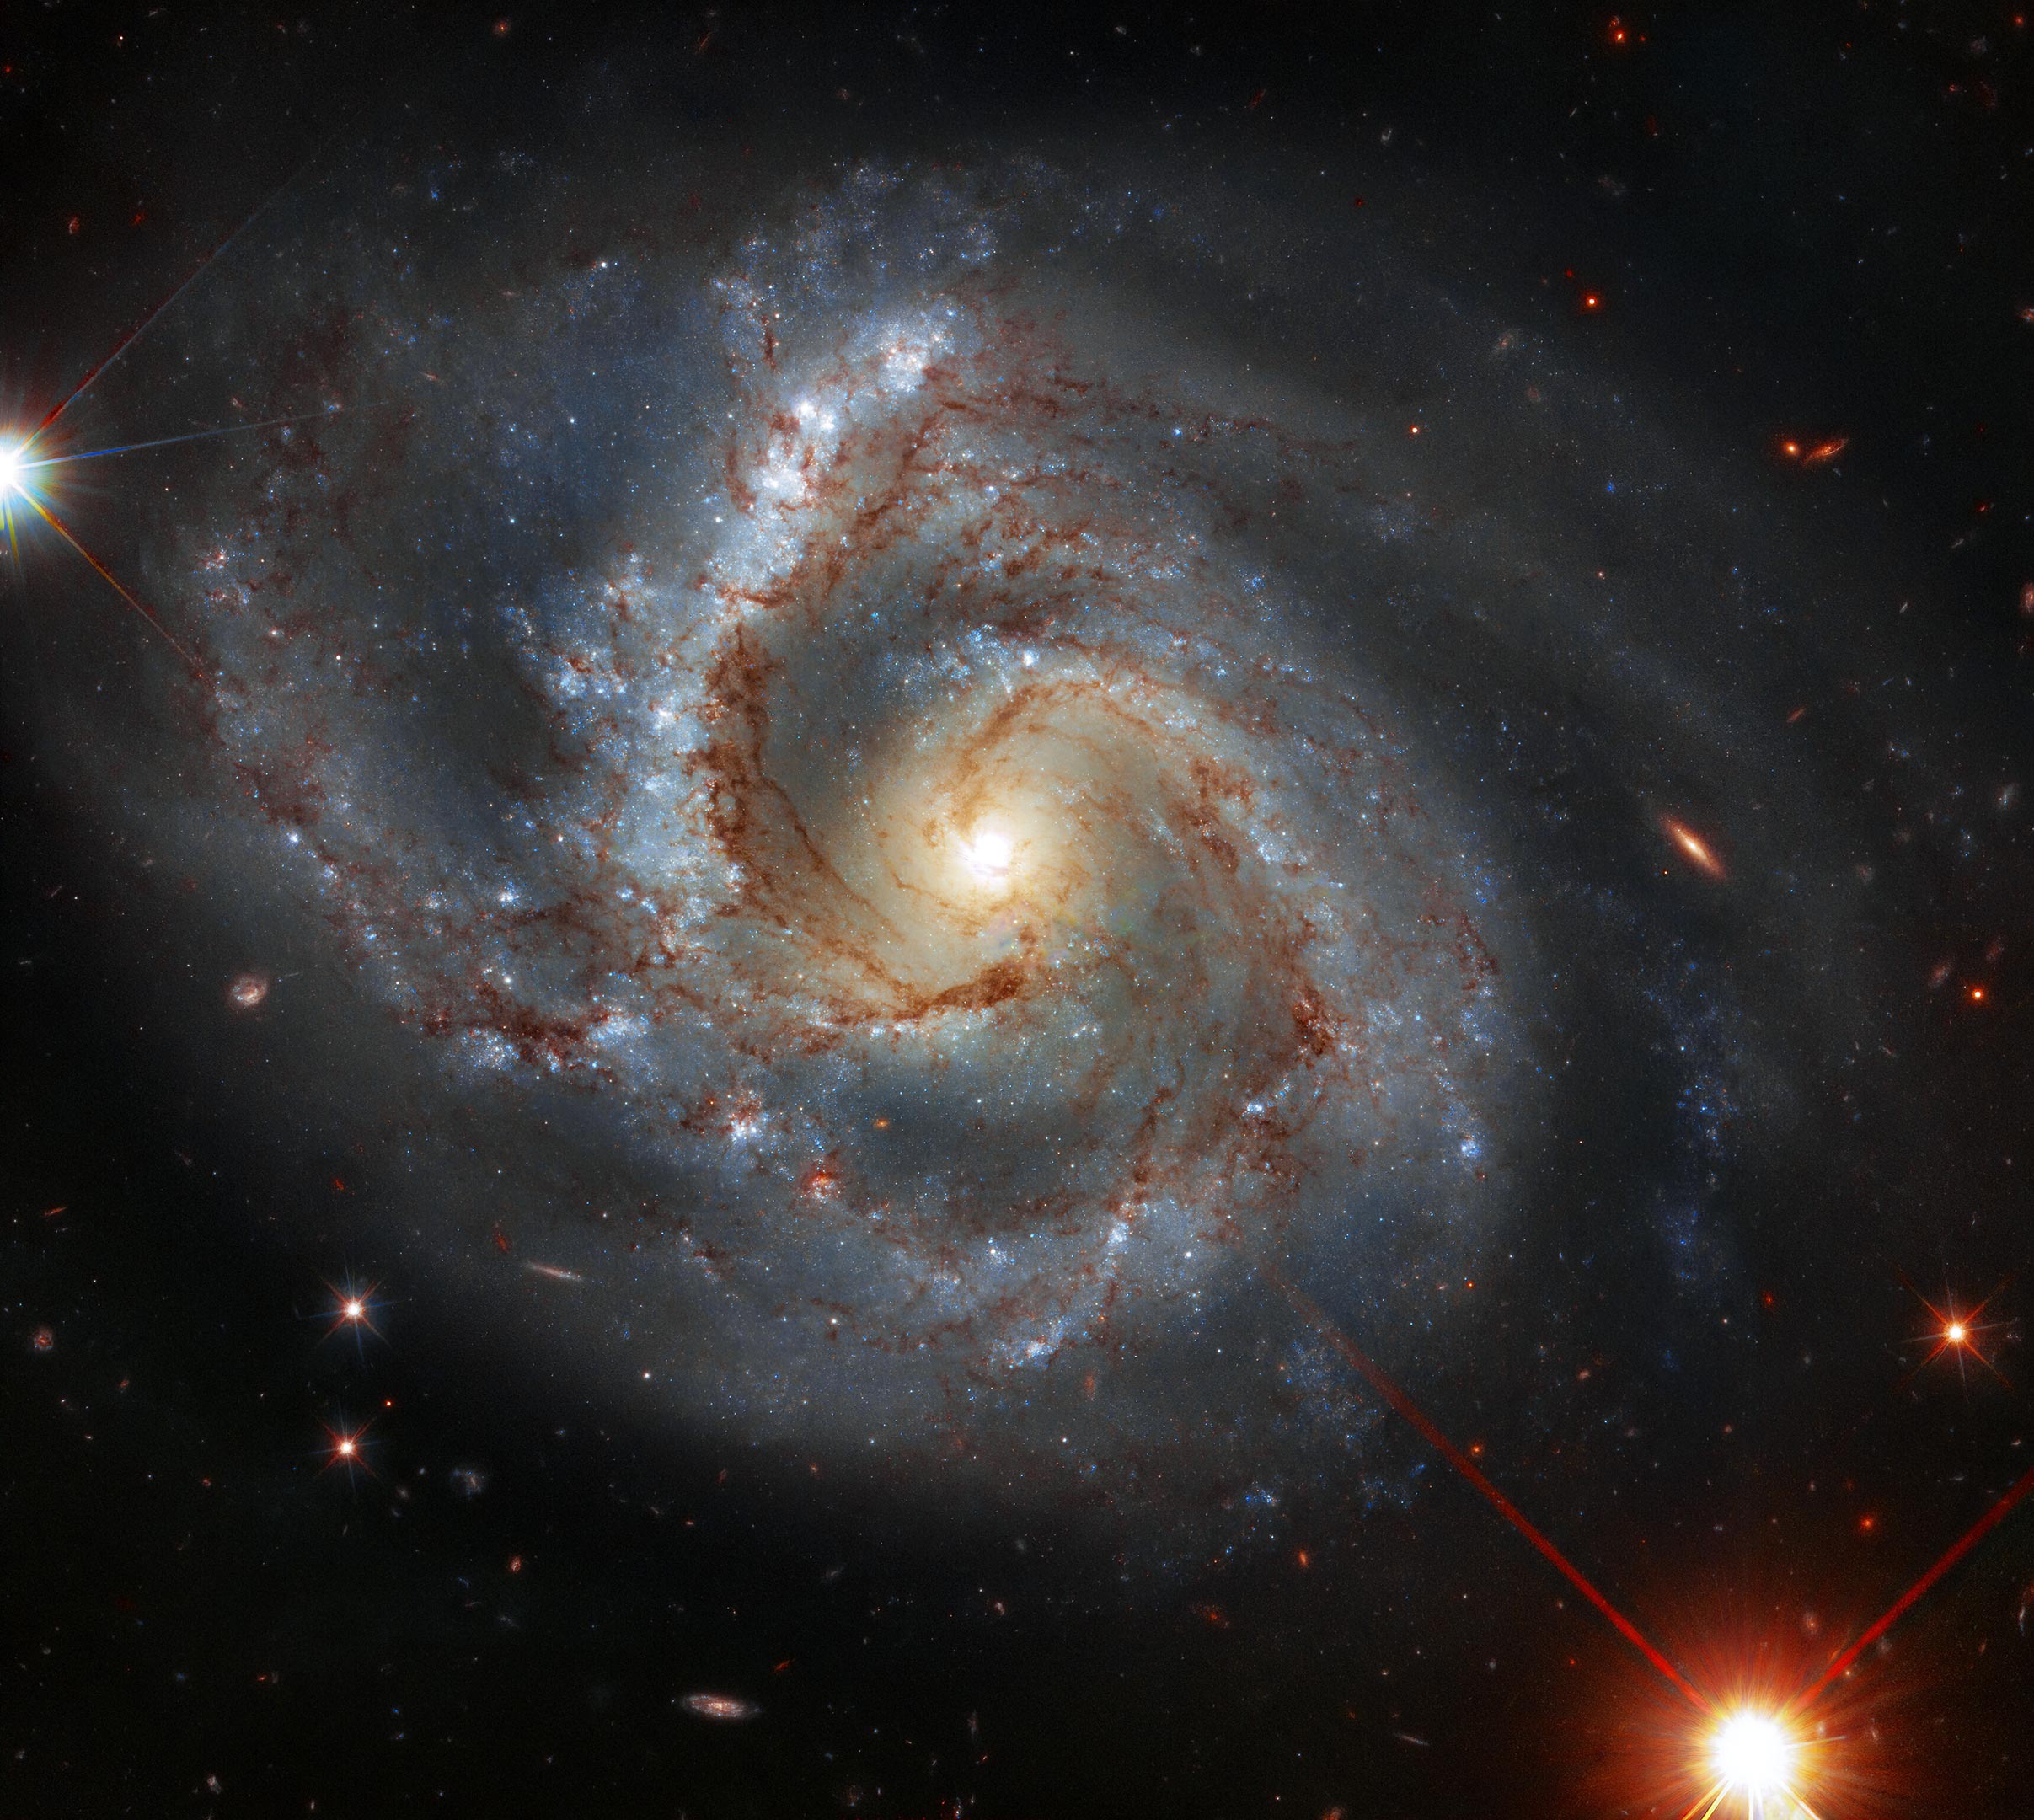 Unusual spiral galaxy with heavy arm